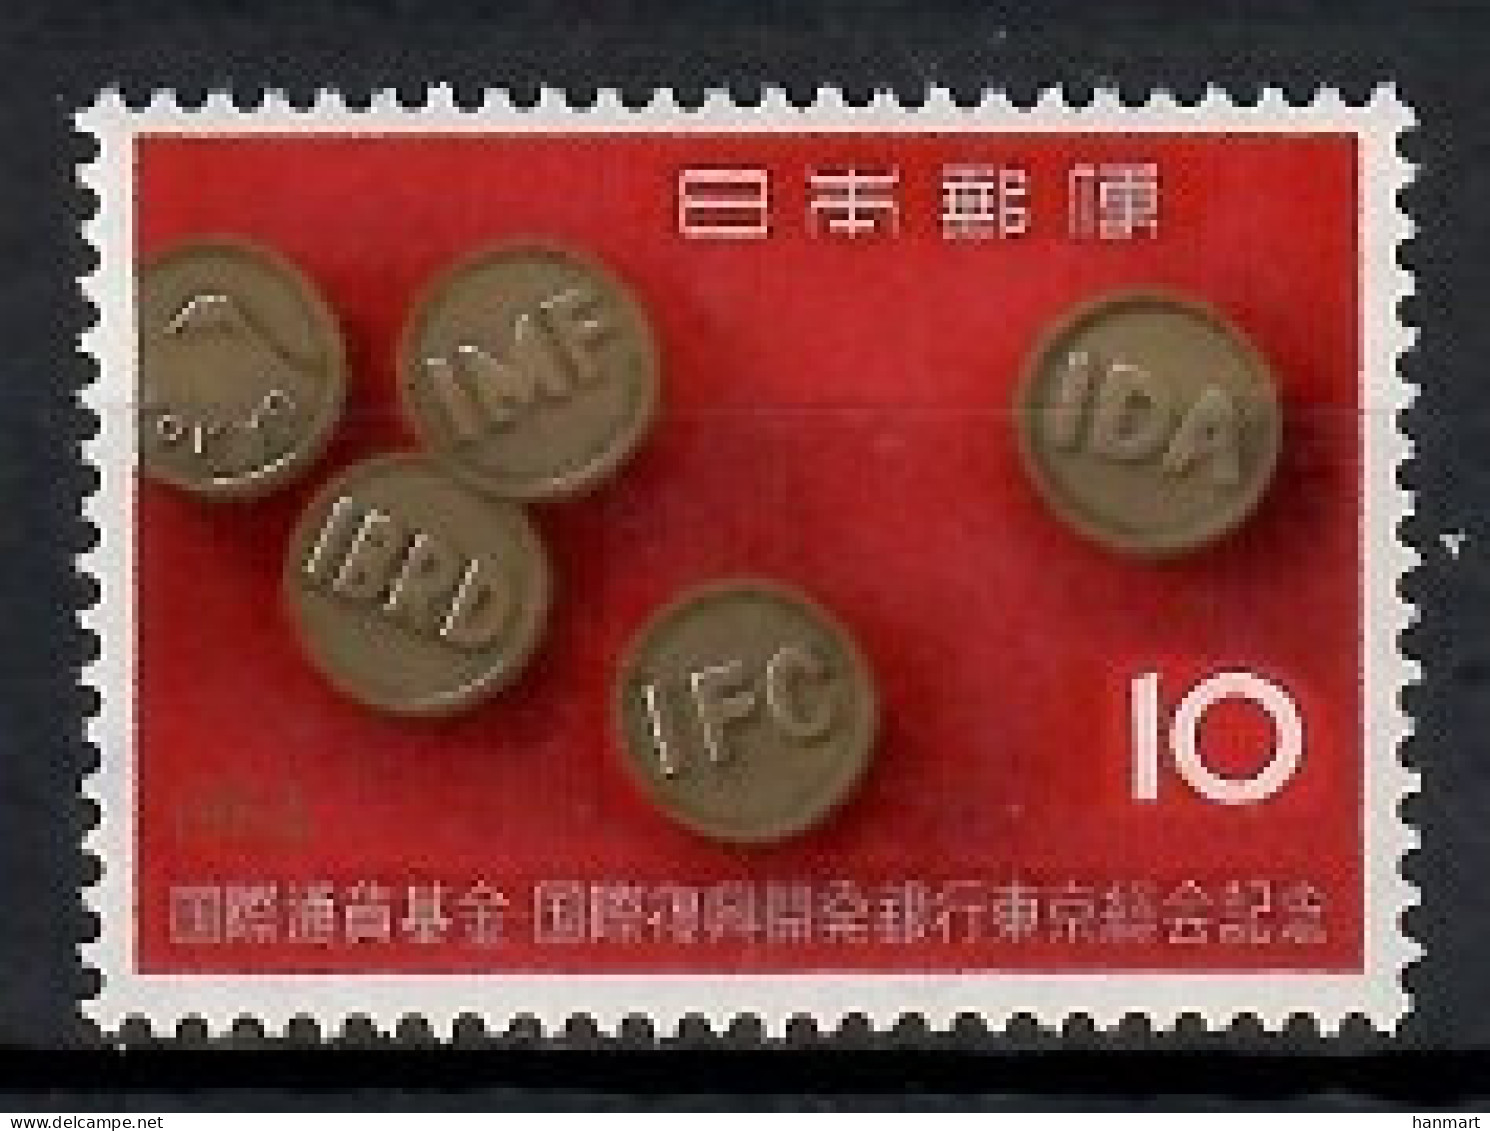 Japan 1964 Mi 868 MNH  (ZS9 JPN868) - Coins